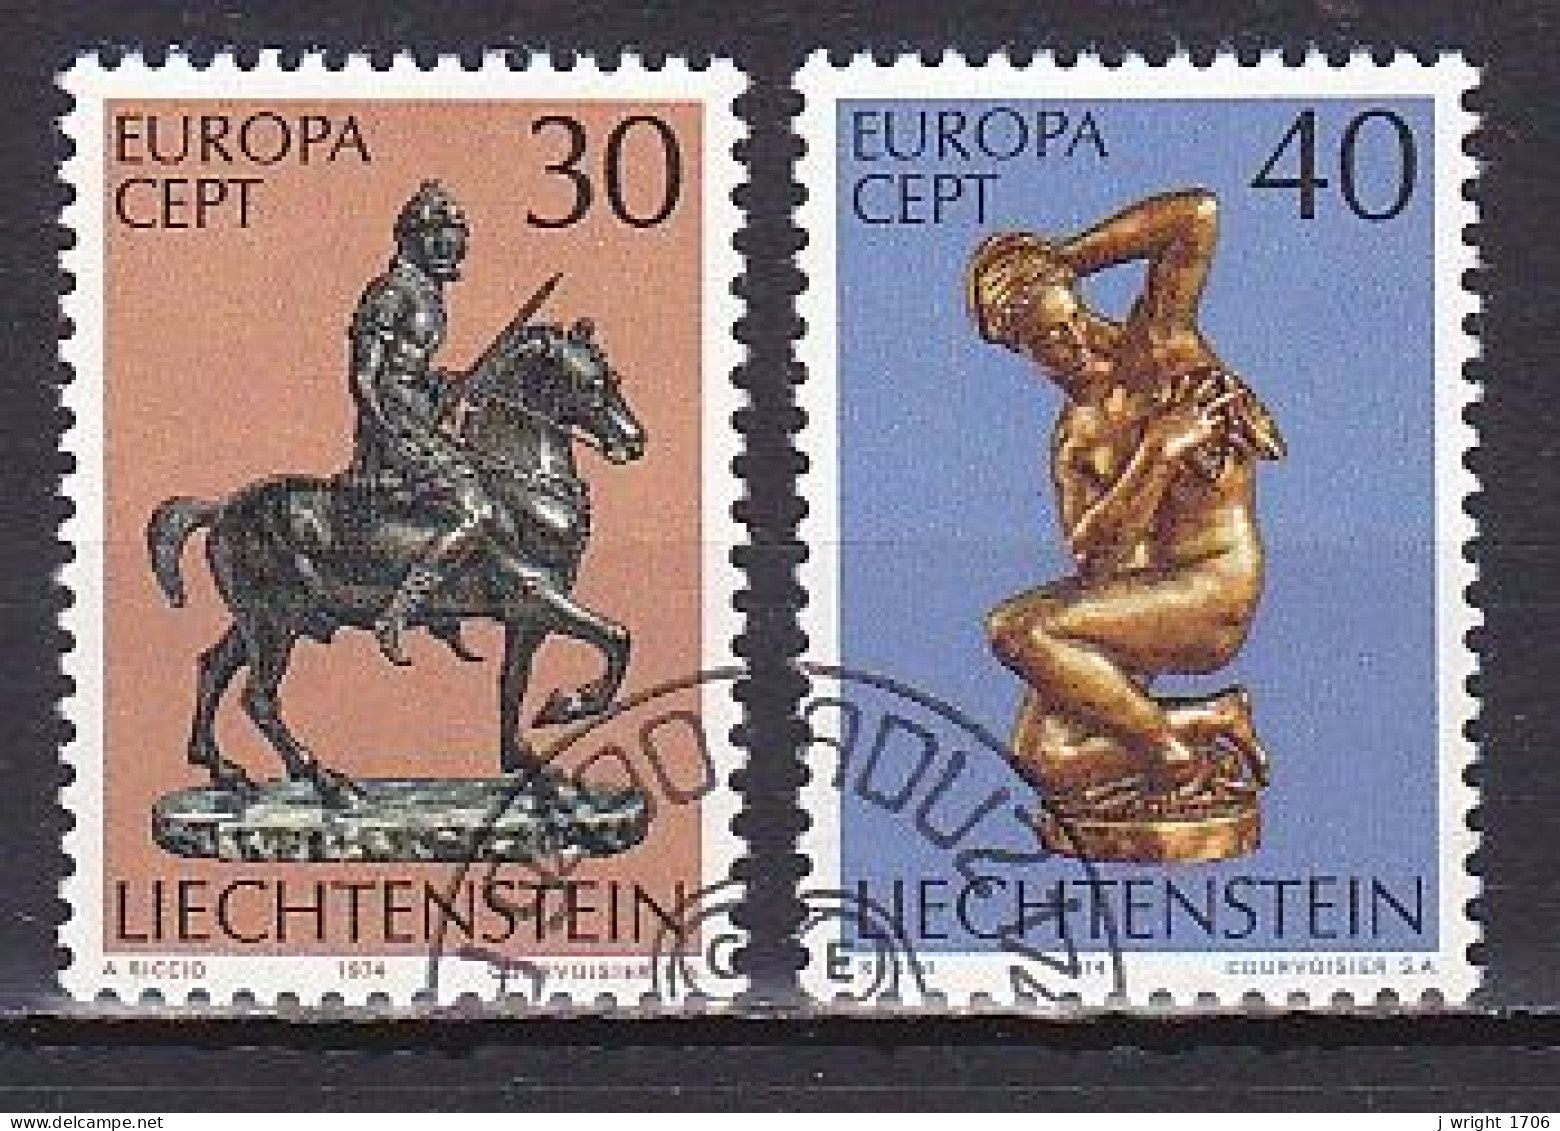 Liechtenstein, 1974, Europa CEPT, Set, CTO - Used Stamps